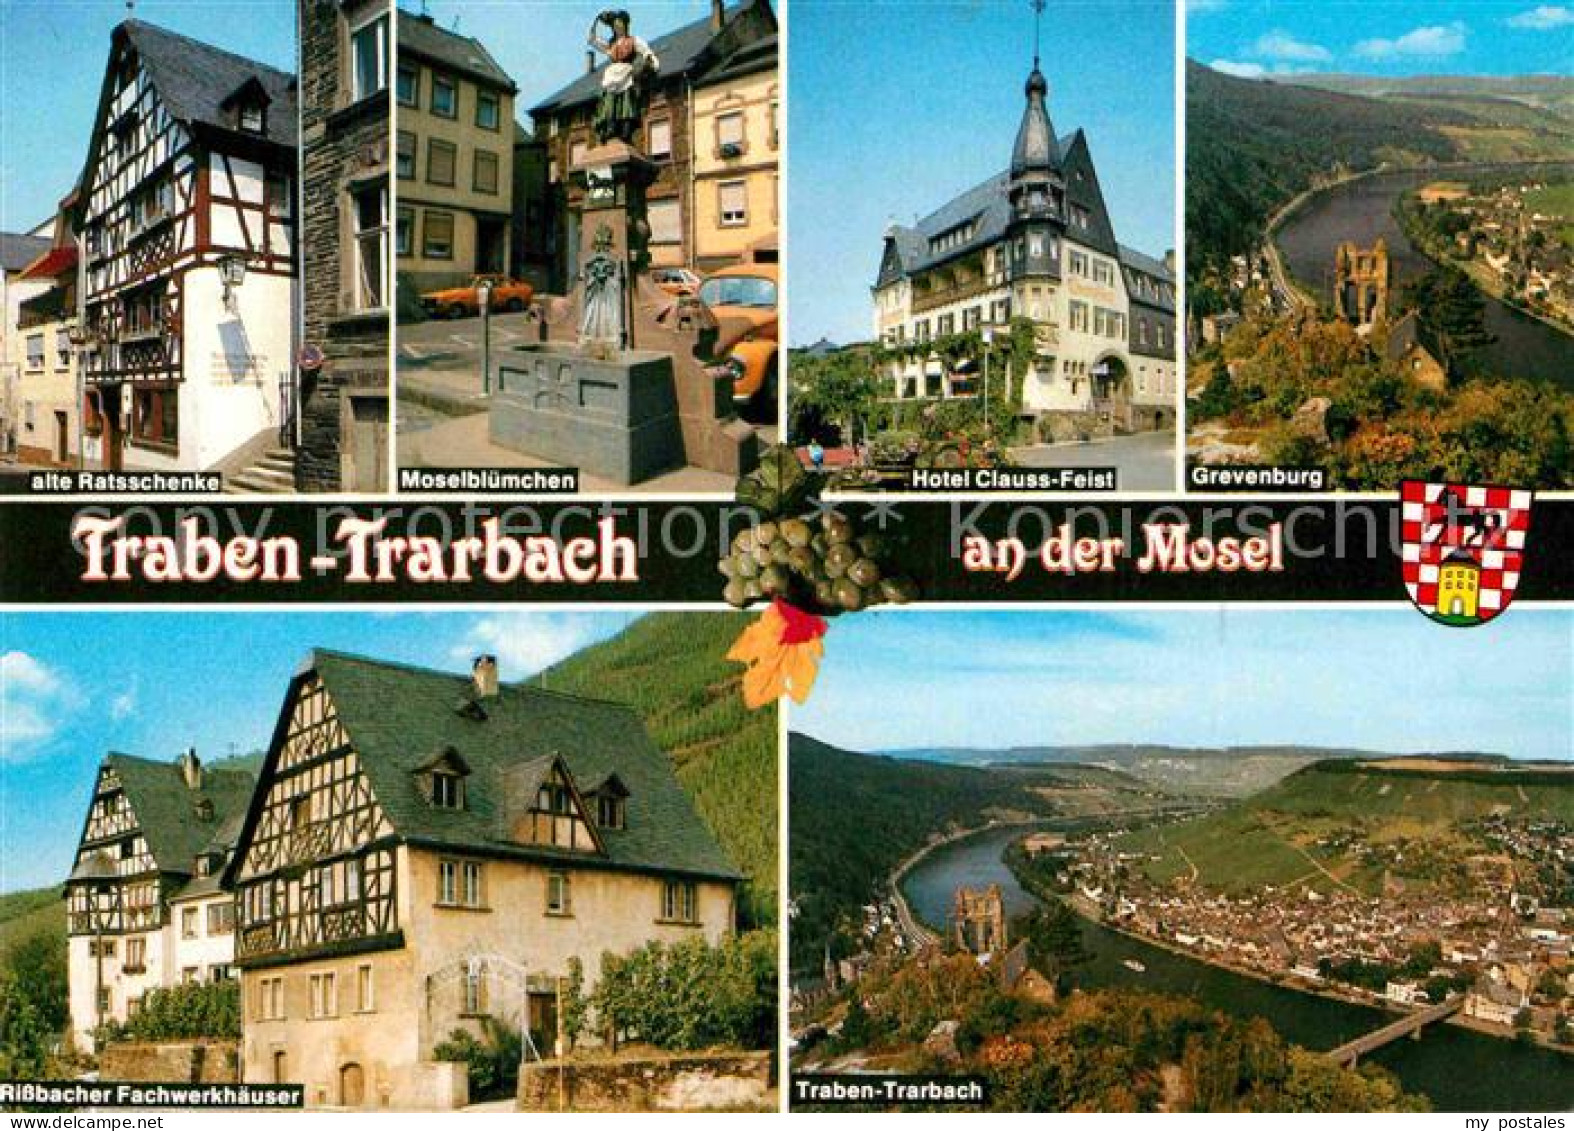 72846547 Traben-Trarbach Moselbluemchen Grevenburg  Traben-Trarbach - Traben-Trarbach